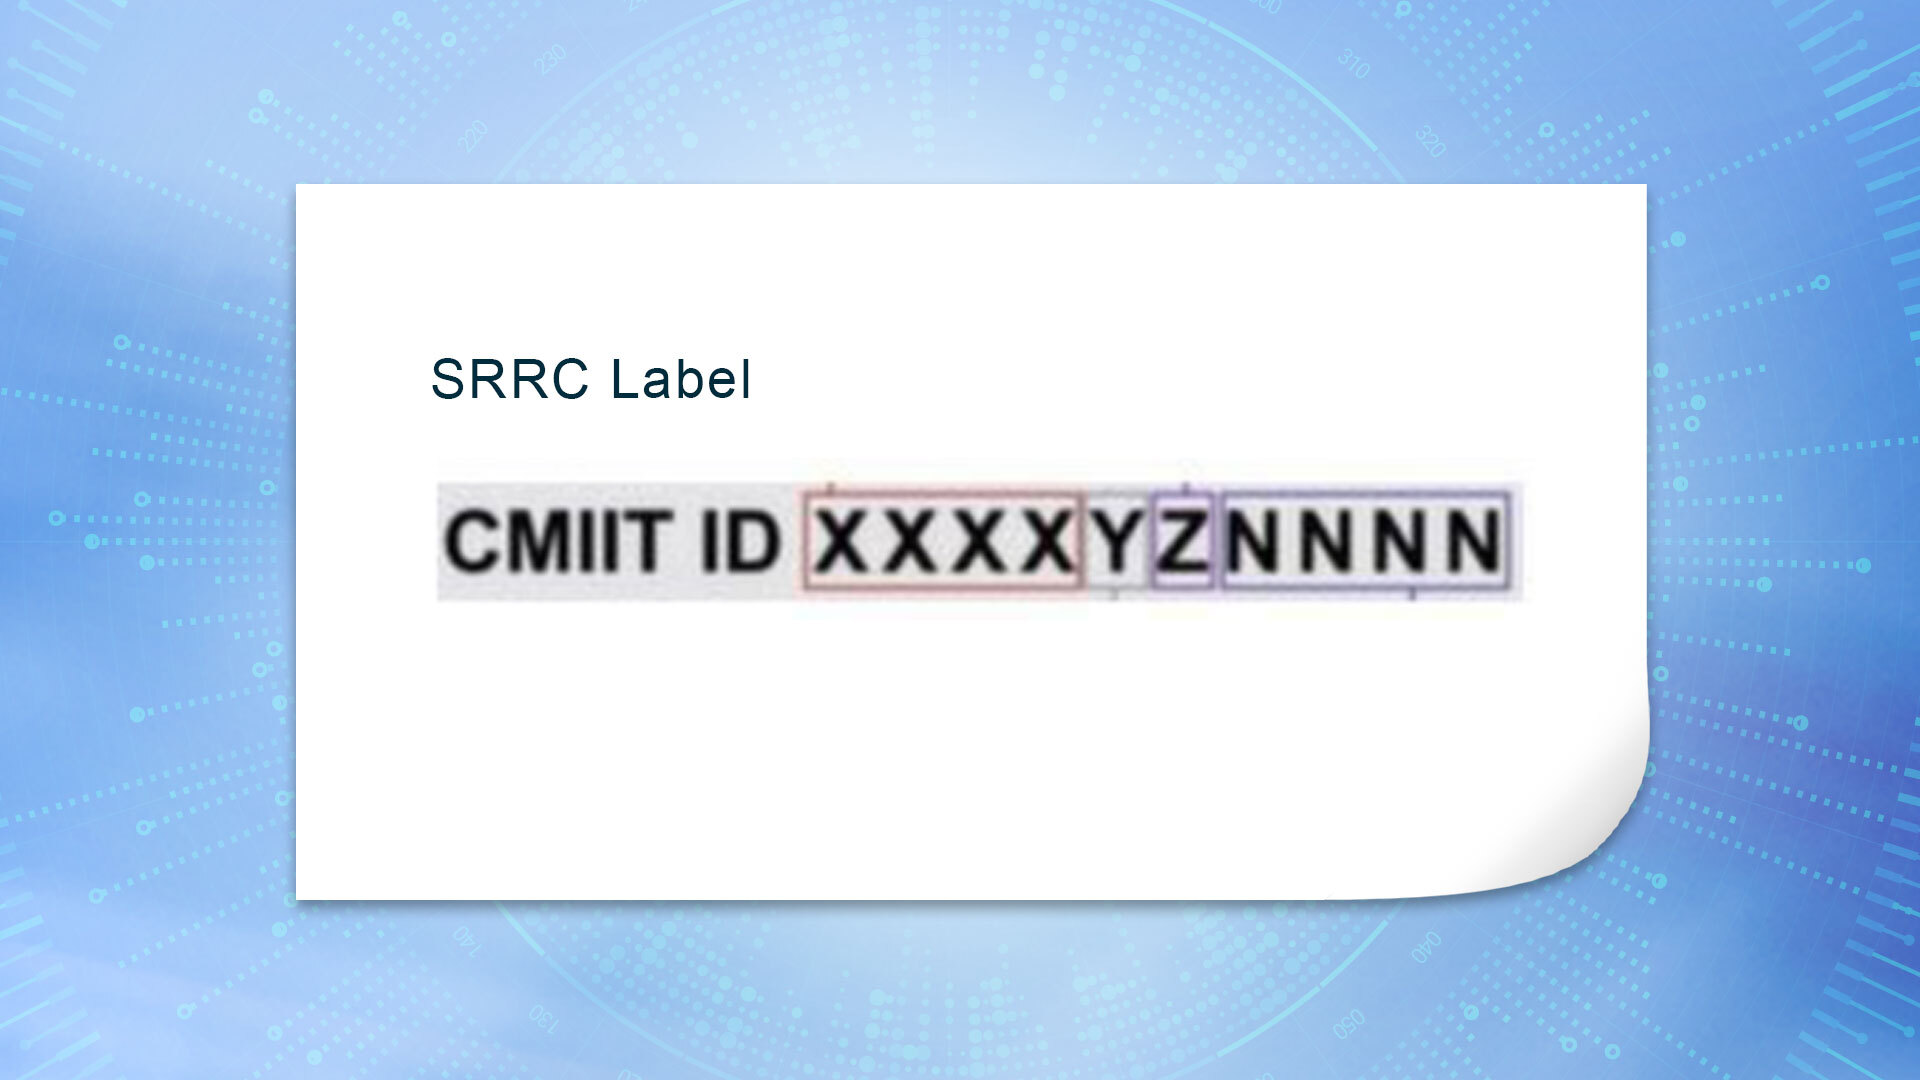 Muster eines SRRC Labels mit CMIIT ID